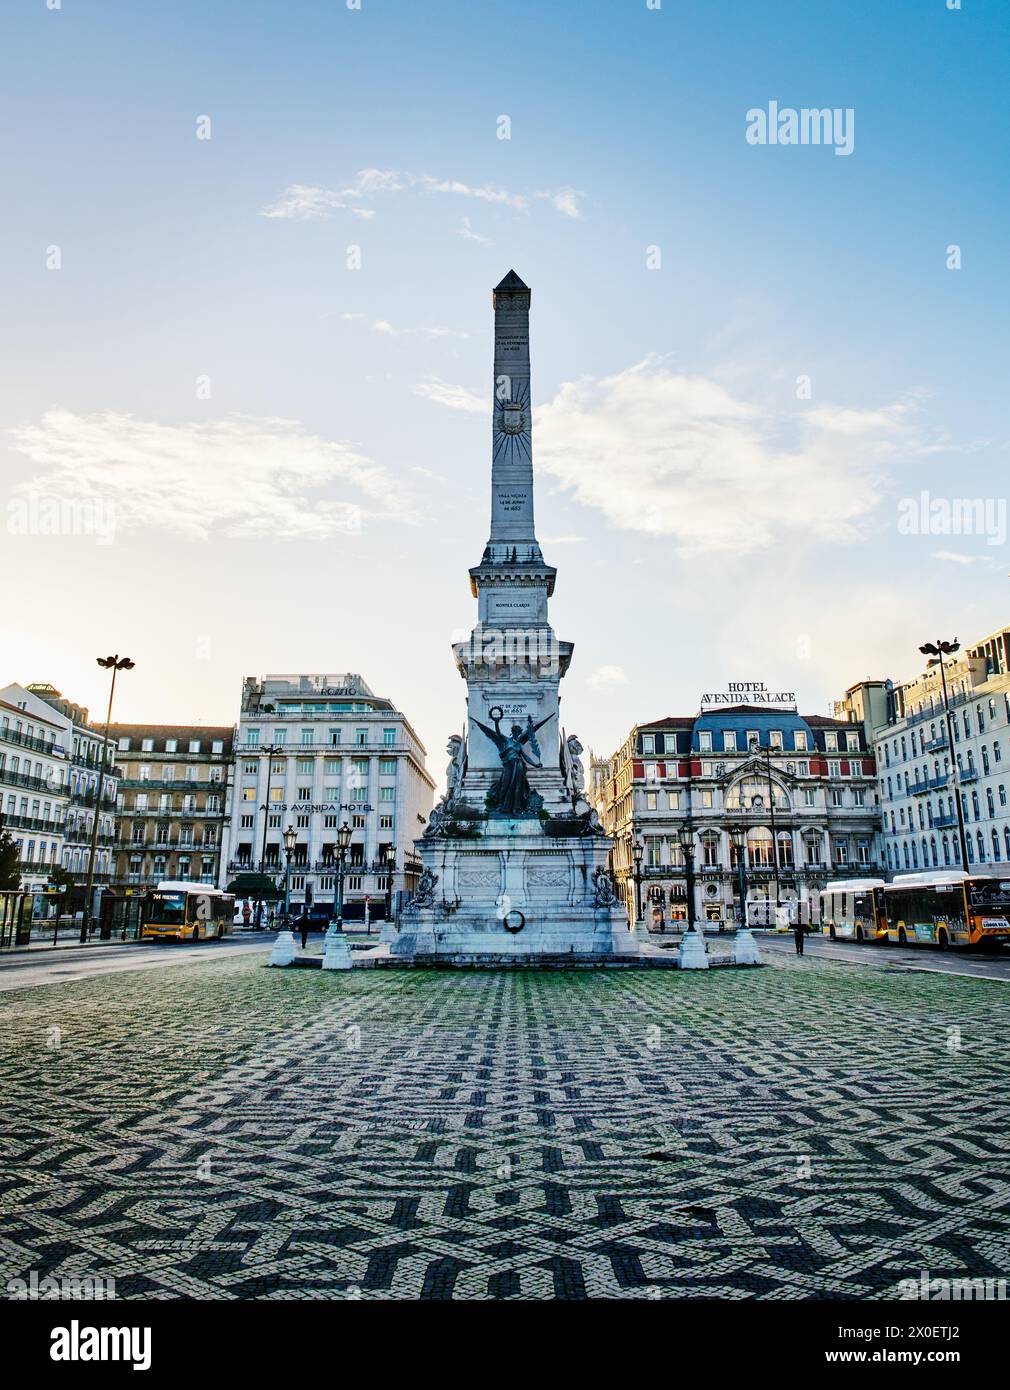 Vista della Piazza Restauradores con l'obelisco Monumento aos Restauradores (Monumento ai restauratori) nel mezzo durante una giornata autunnale a Lisbona, Portu Foto Stock